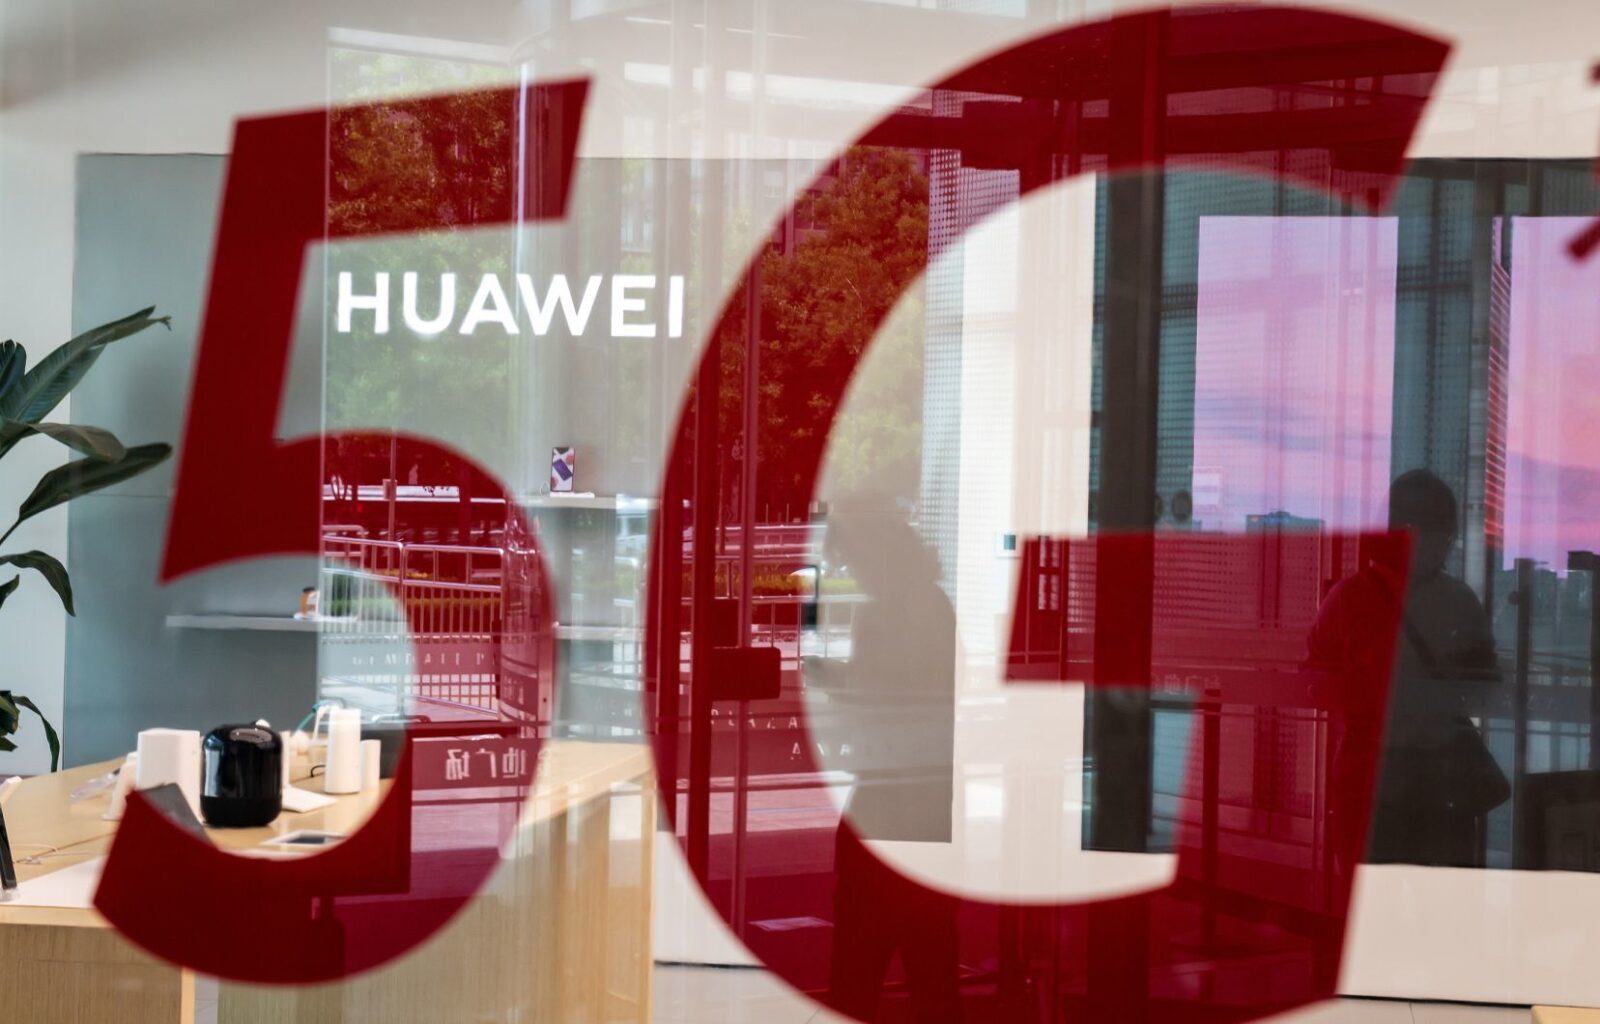 5g huawei, Exclusion controversée de la 5G Huawei au Royaume-Uni